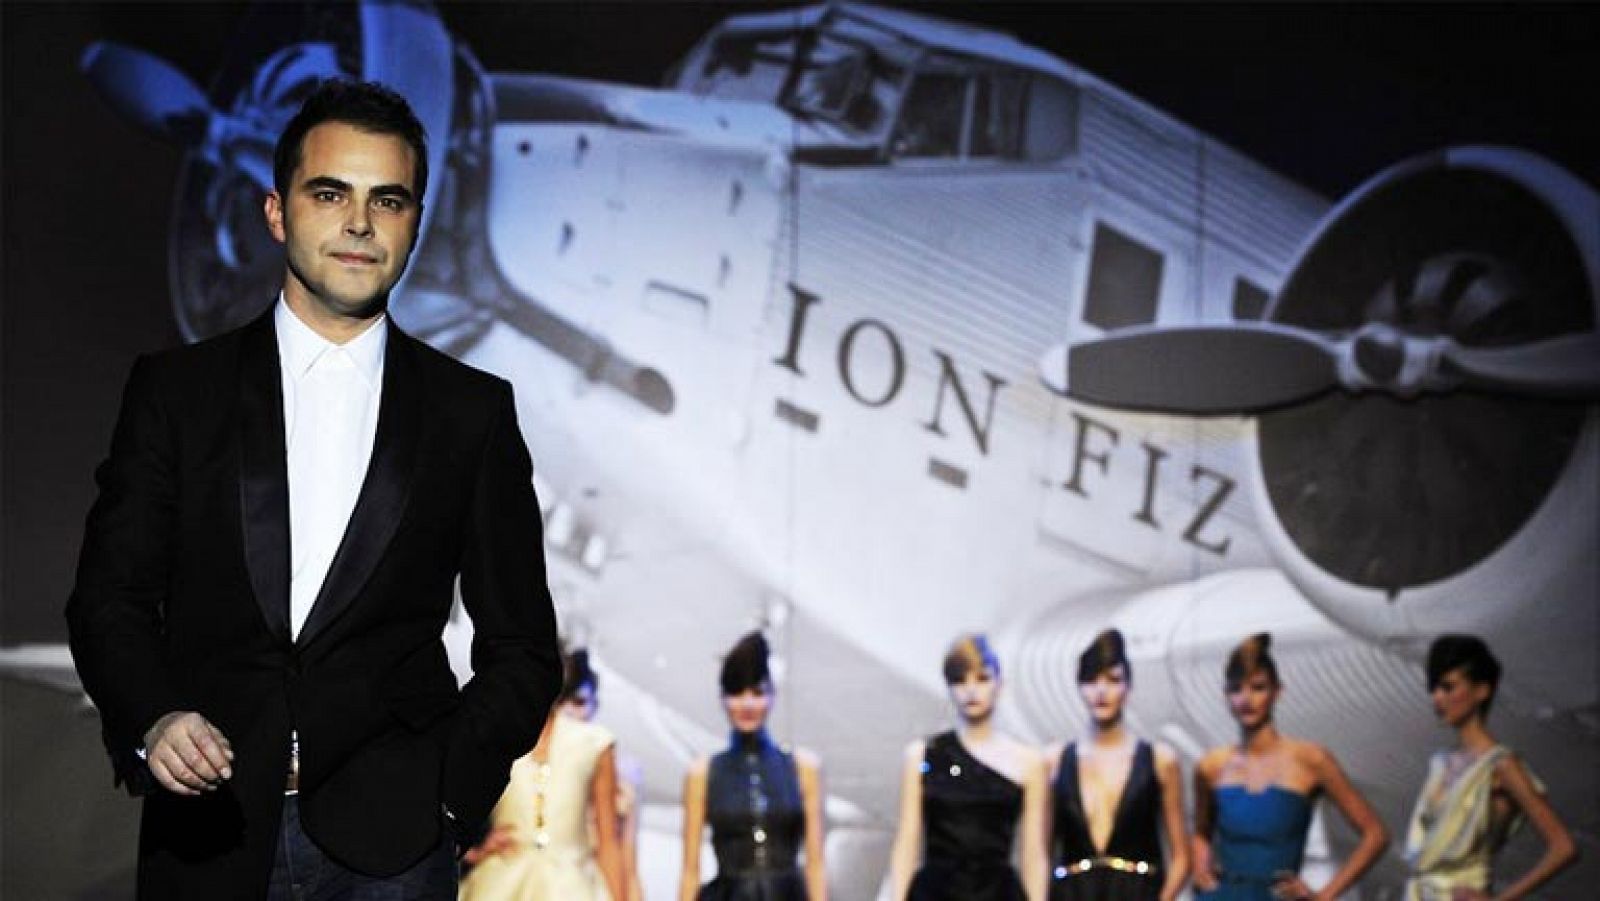 Ion FIz, el diseñador vasco, cumple 10 años en la  moda